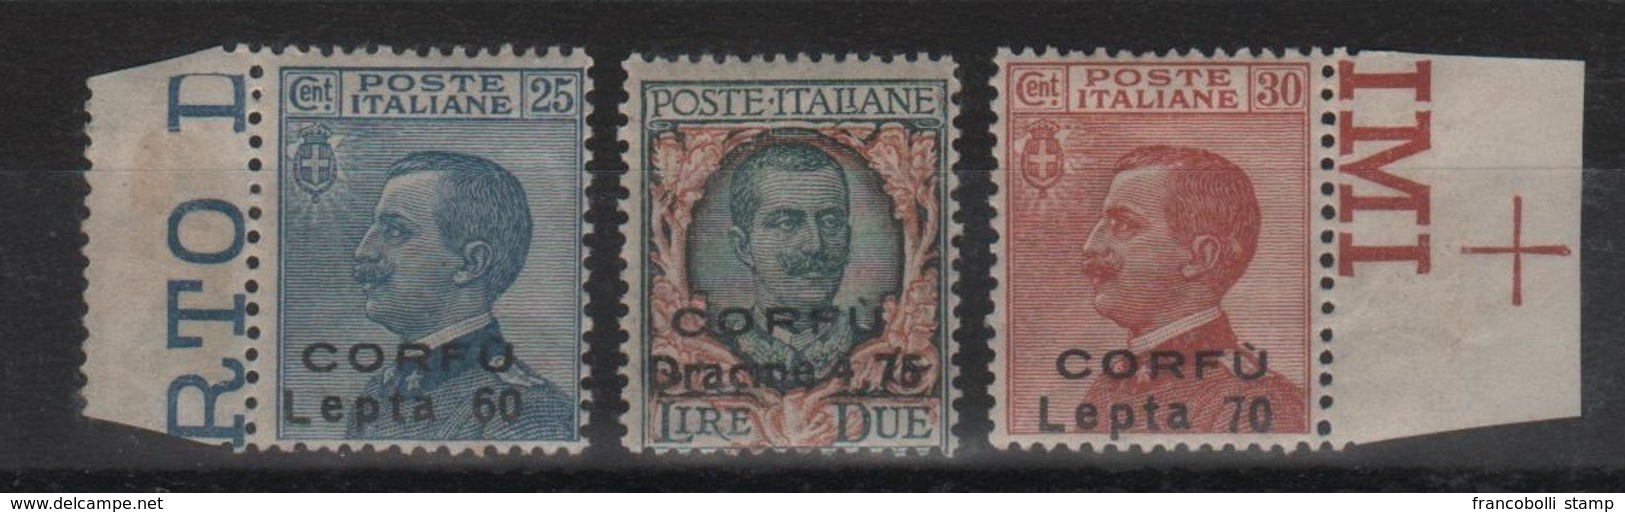 1923 Occupazione Corfù Francobolli D'Italia Sopr. CORFU Serie Cpl MNH Non Emessi - Corfù